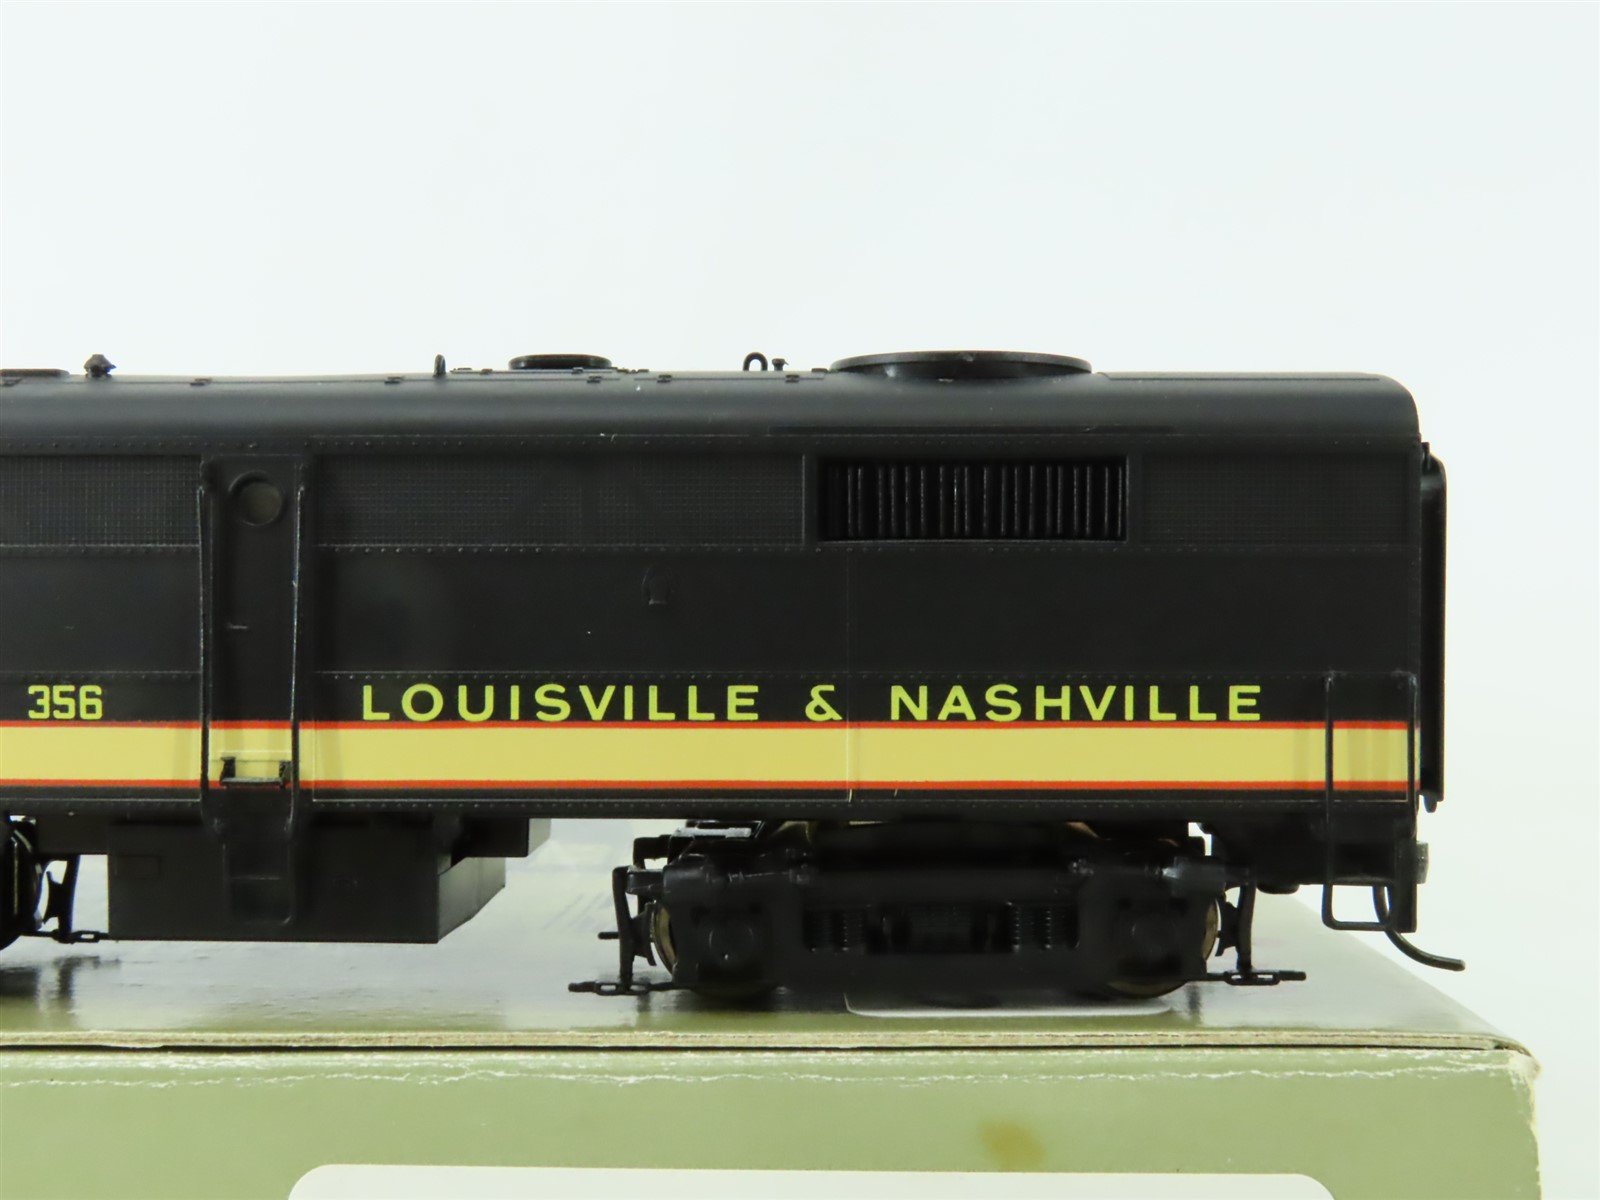 HO Scale Proto 2000 8328 L&N Louisville & Nashville FA2 Diesel